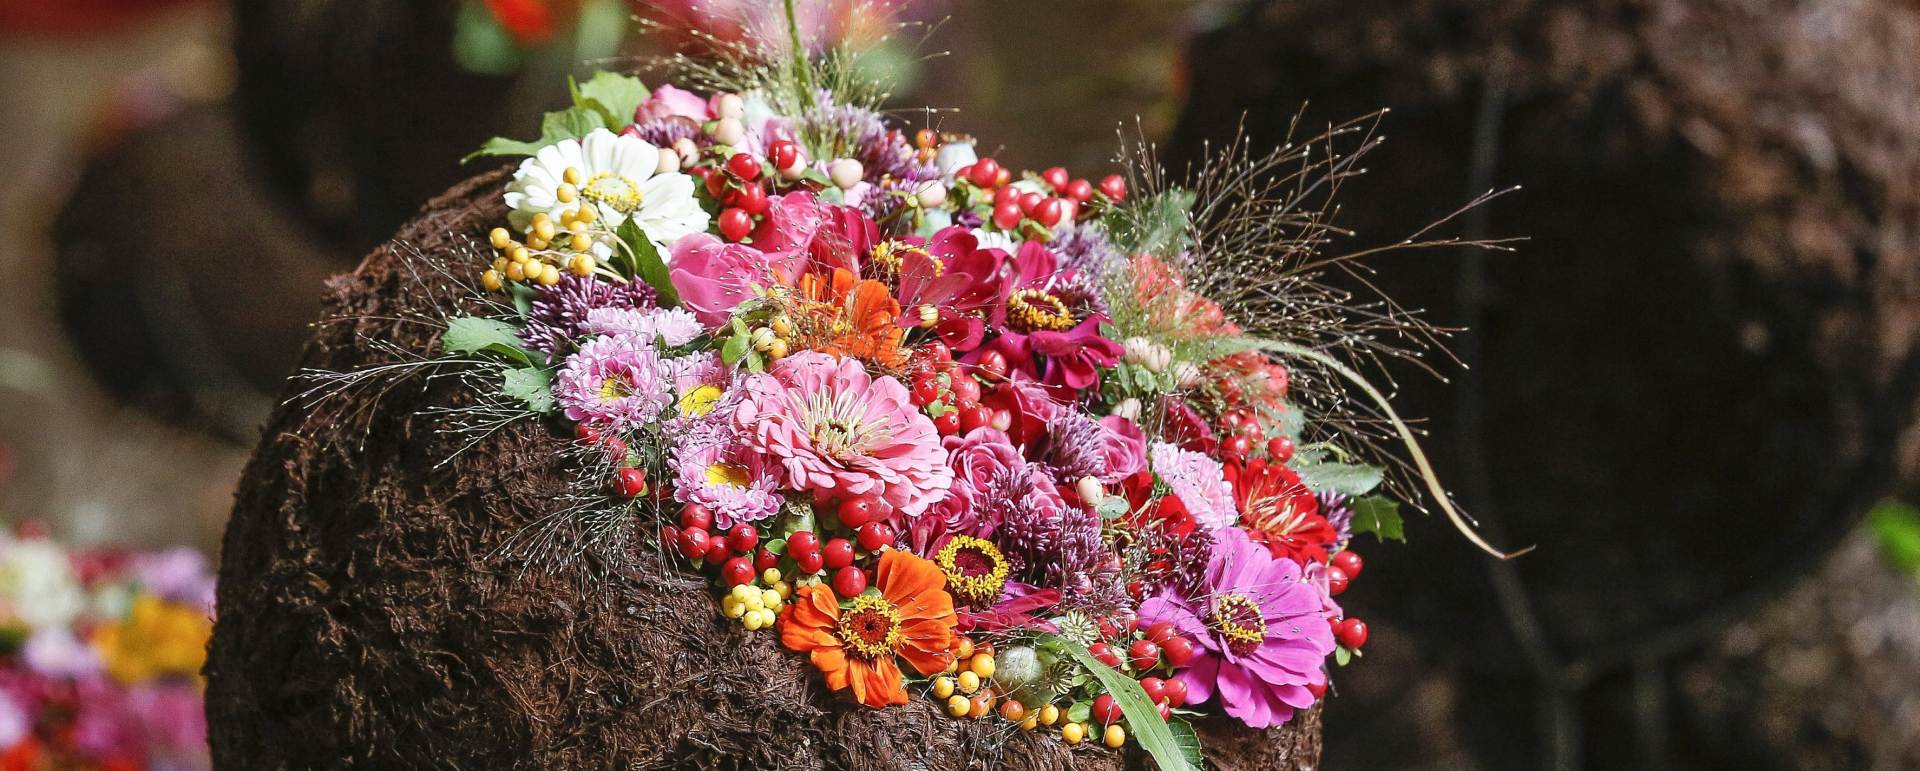 ZARAŽENO NAMETNICIMA: Rusija najavljuje strožu kontrolu uvoza nizozemskog cvijeća